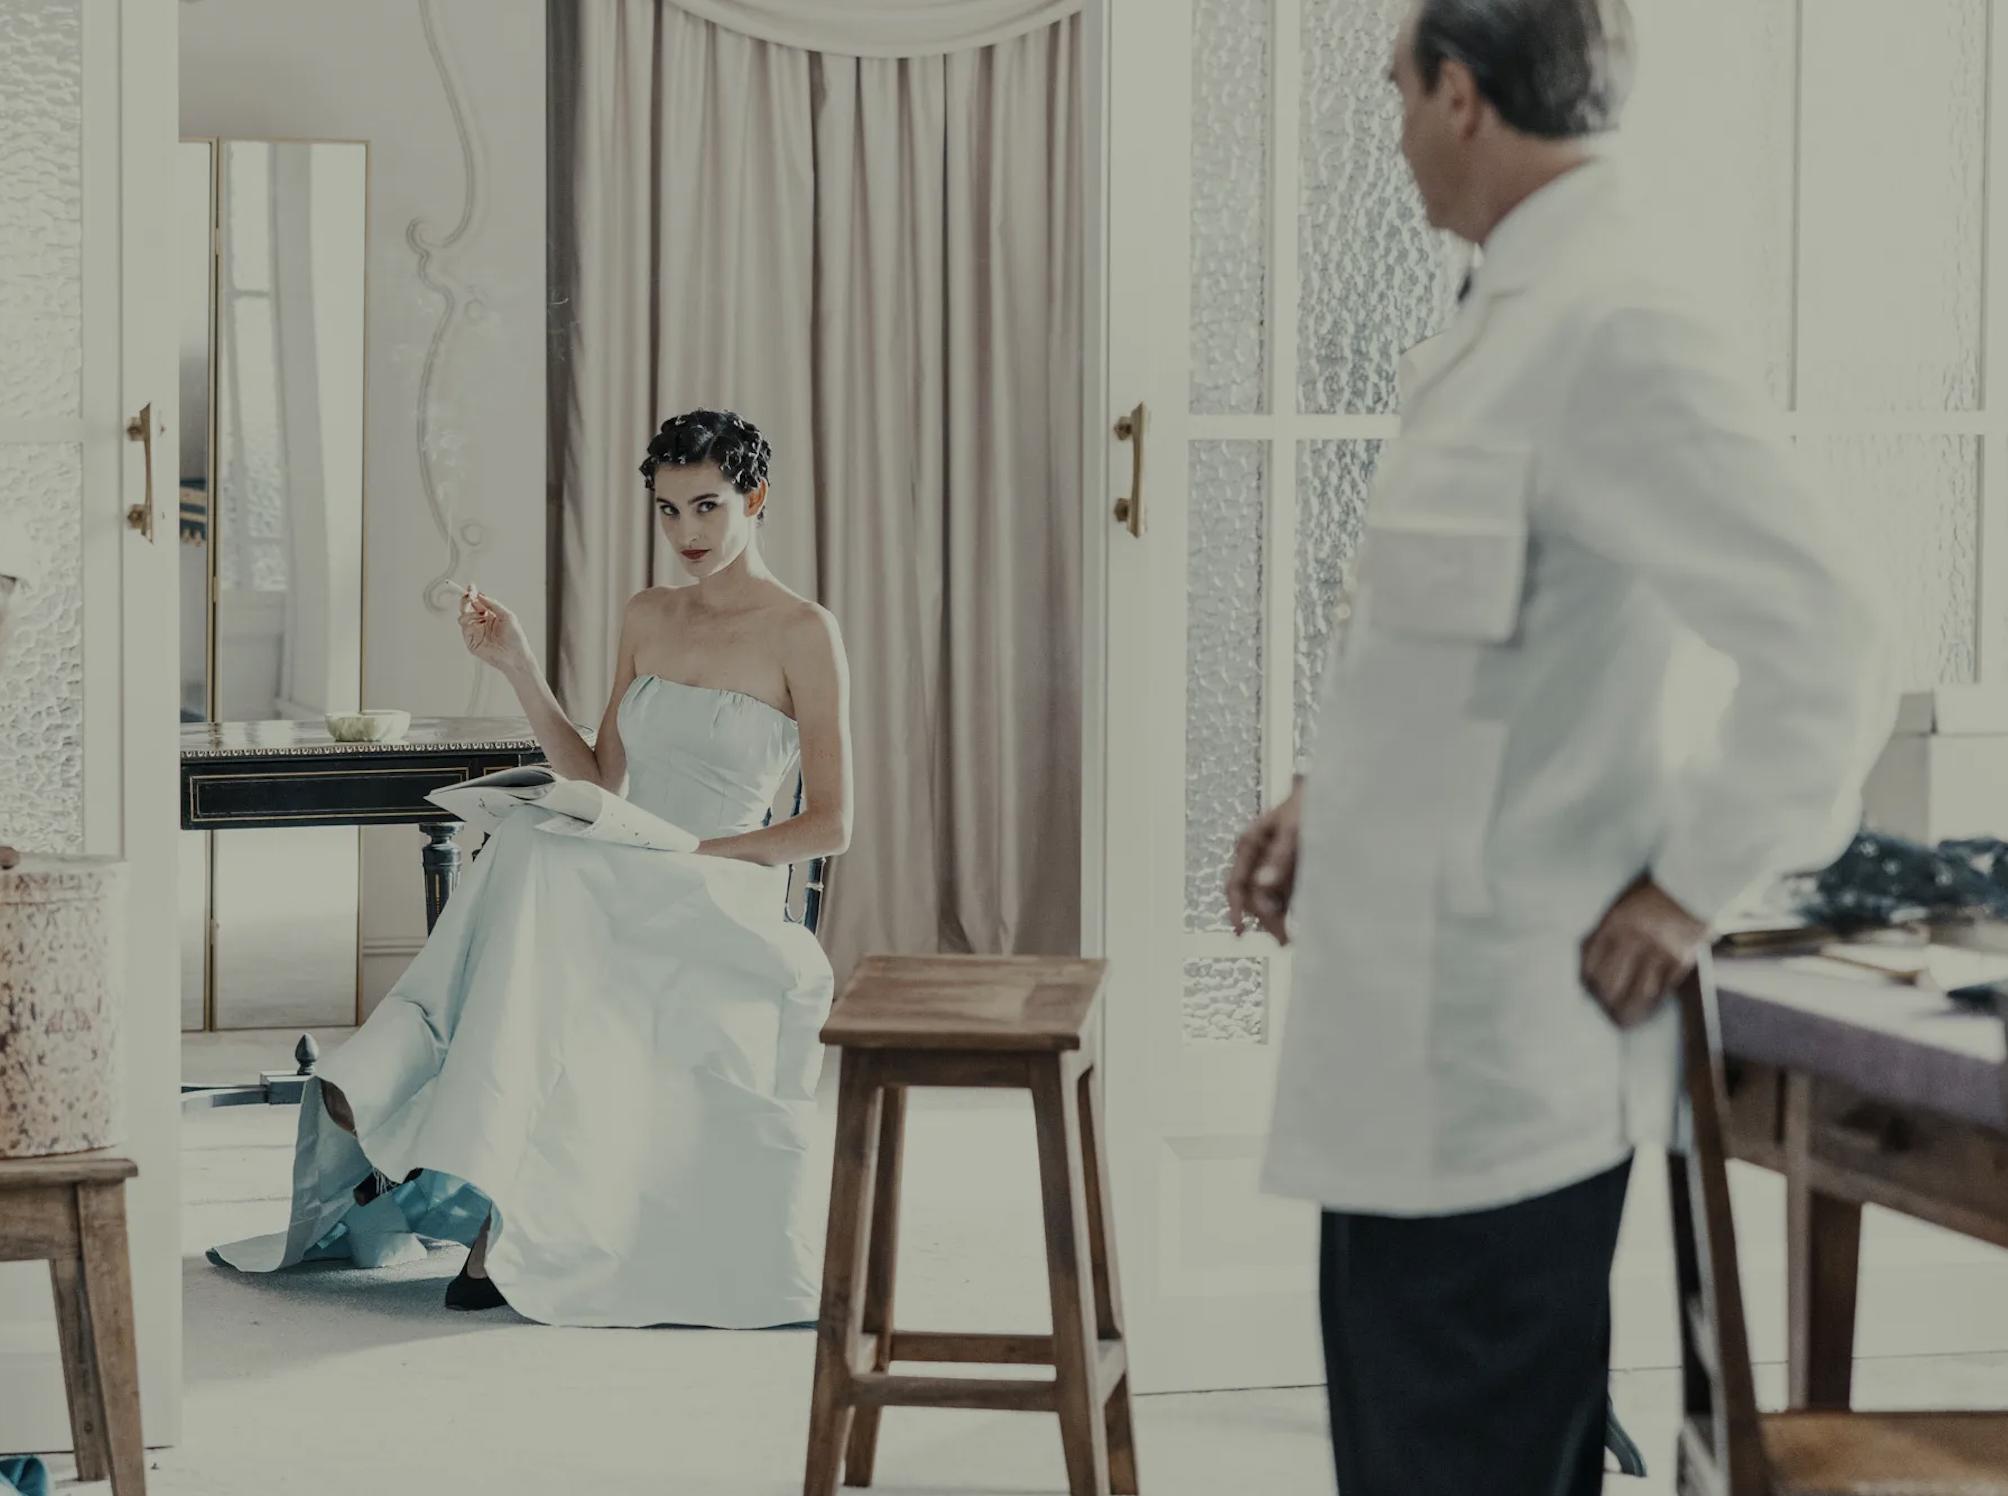 La Magia de la Moda en la Película "Cristobal Balenciaga": Balenciaga, Chanel y Dior Unen Fuerzas